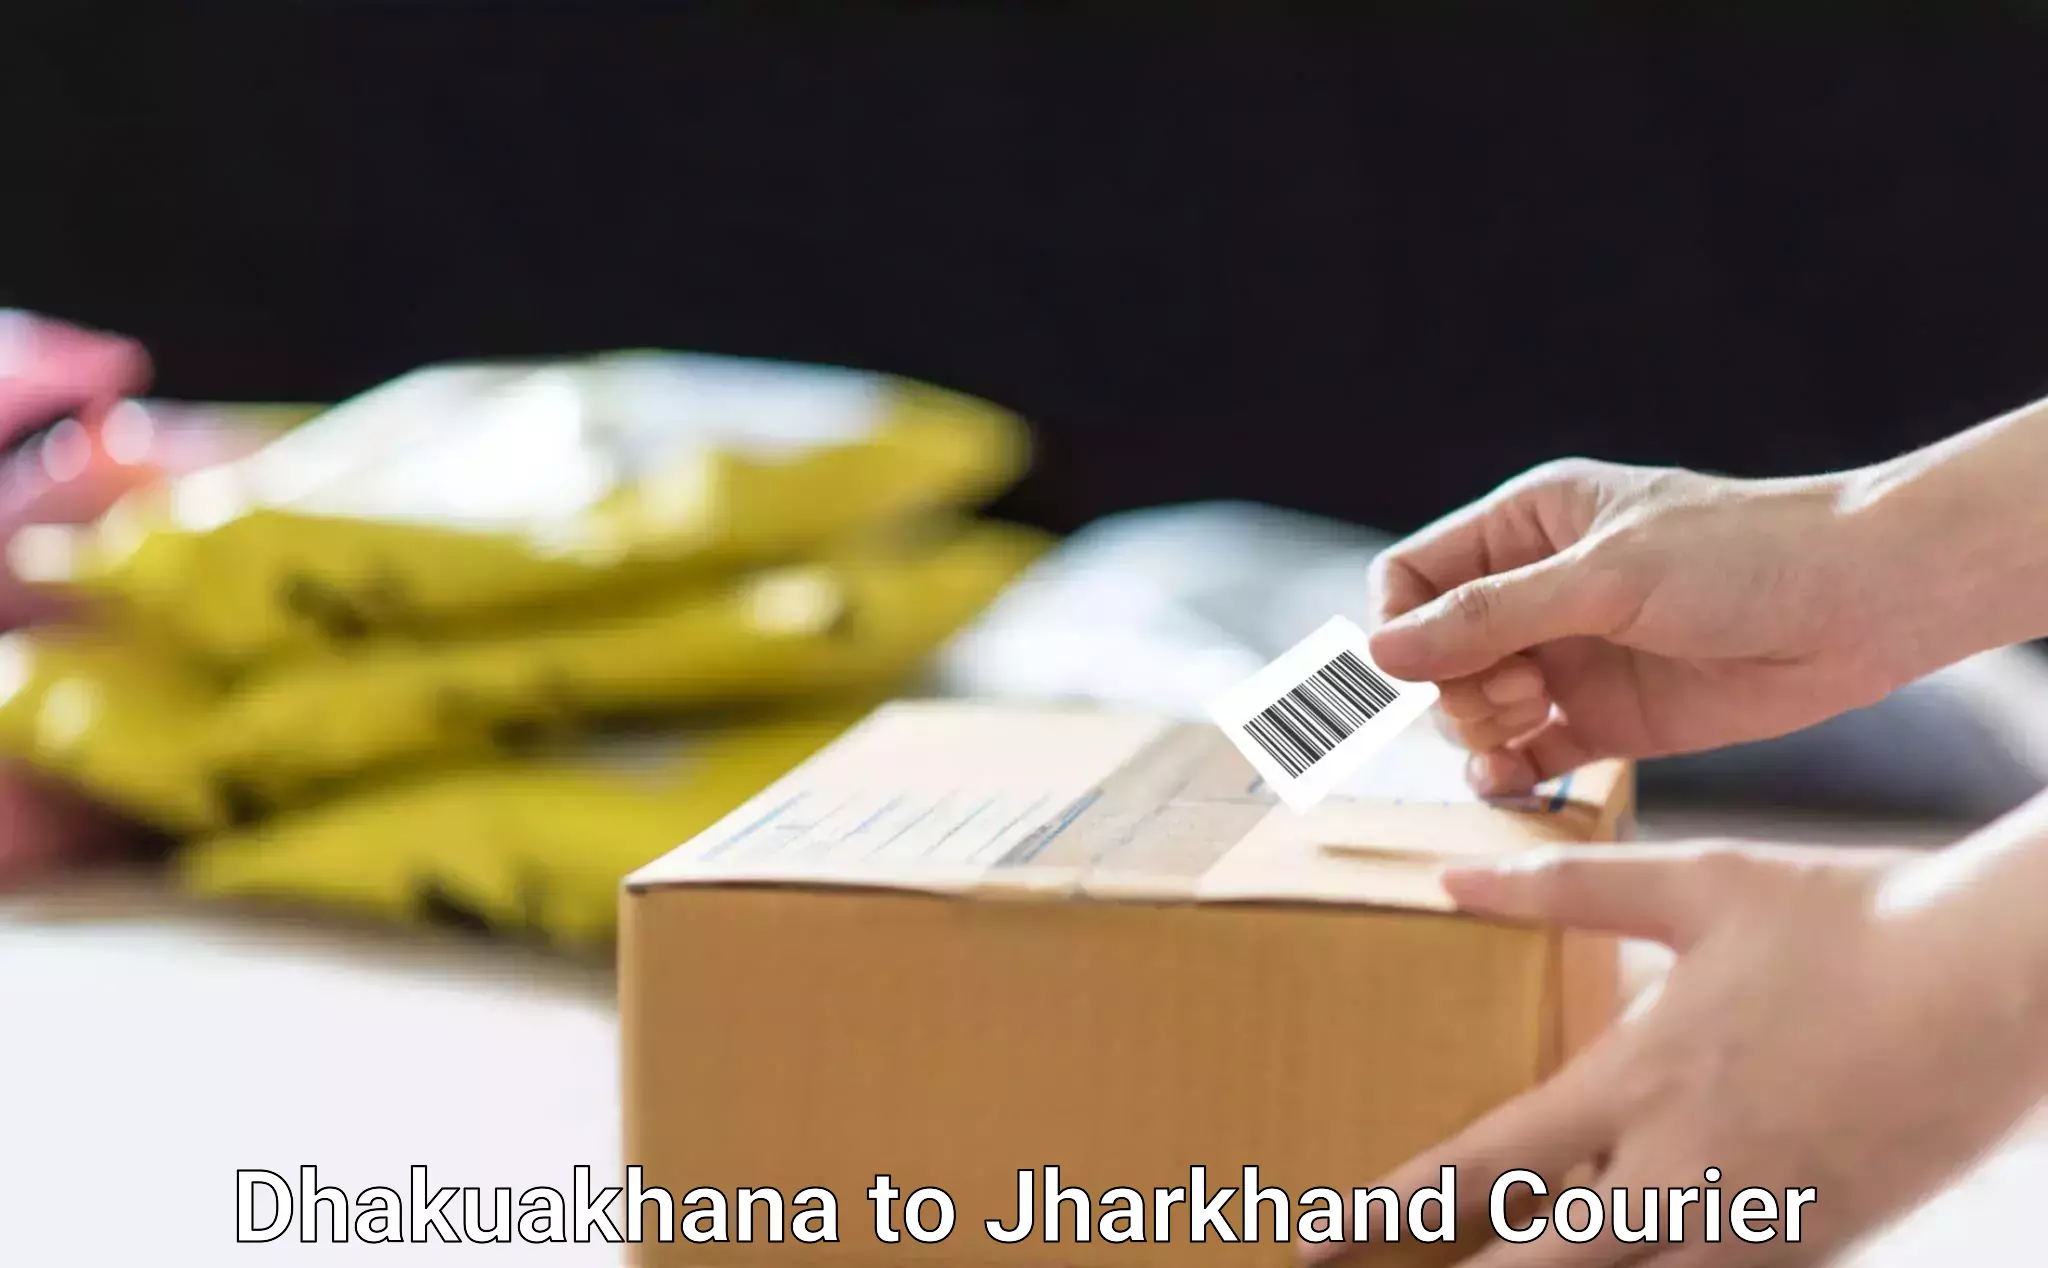 On-demand delivery in Dhakuakhana to IIT Dhanbad